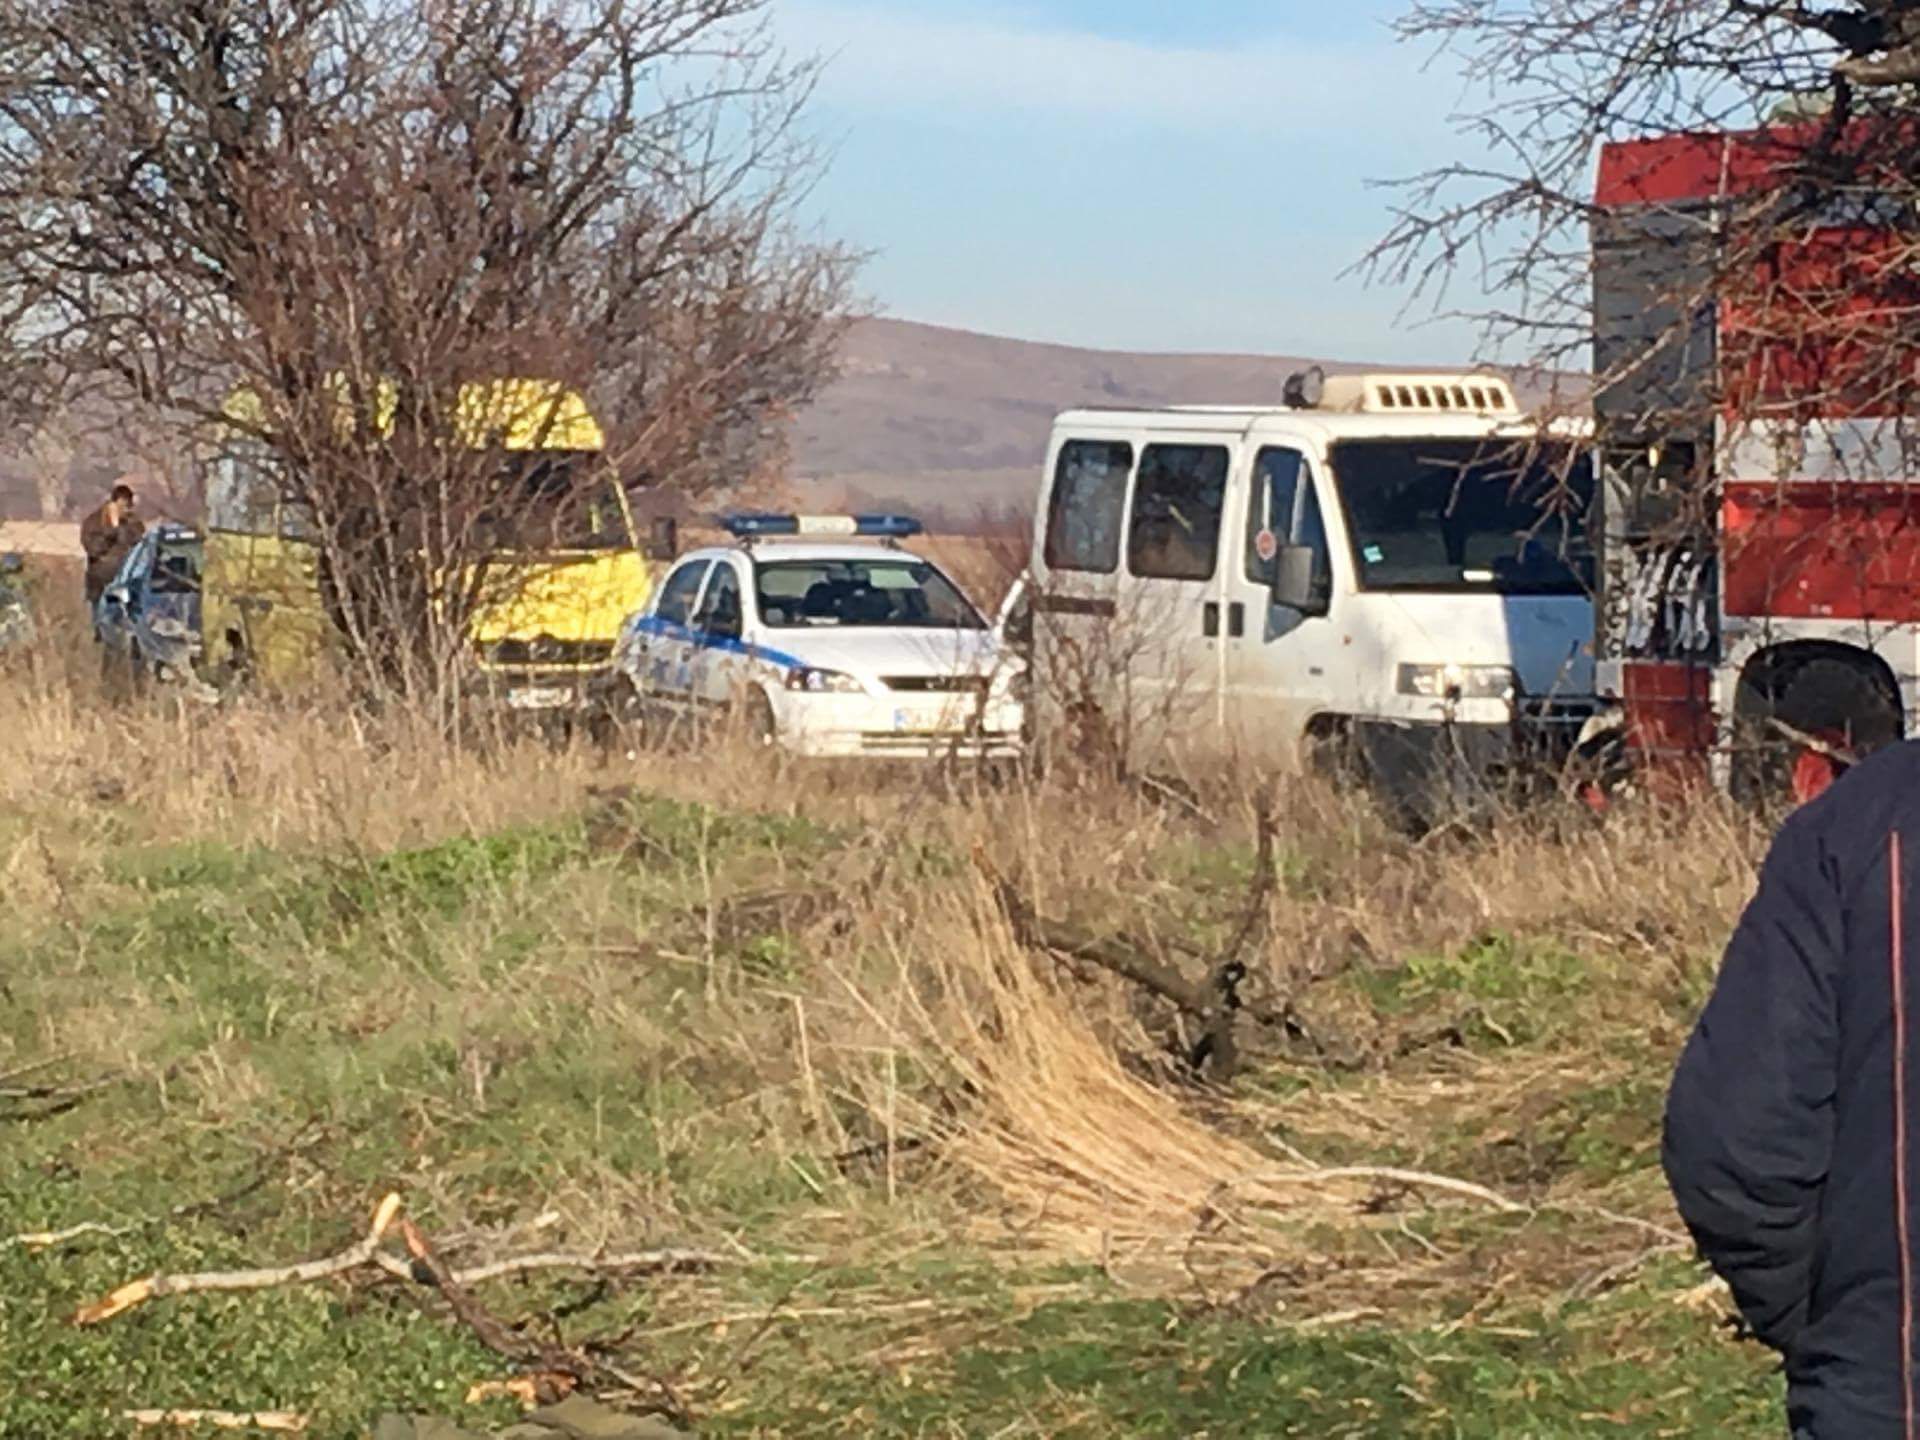 Двама души загинаха, след като автобус с работници се удари в дърво на пътя между селата Сокол и Еленово. Още петима са откарани в болница в Нова Загора.